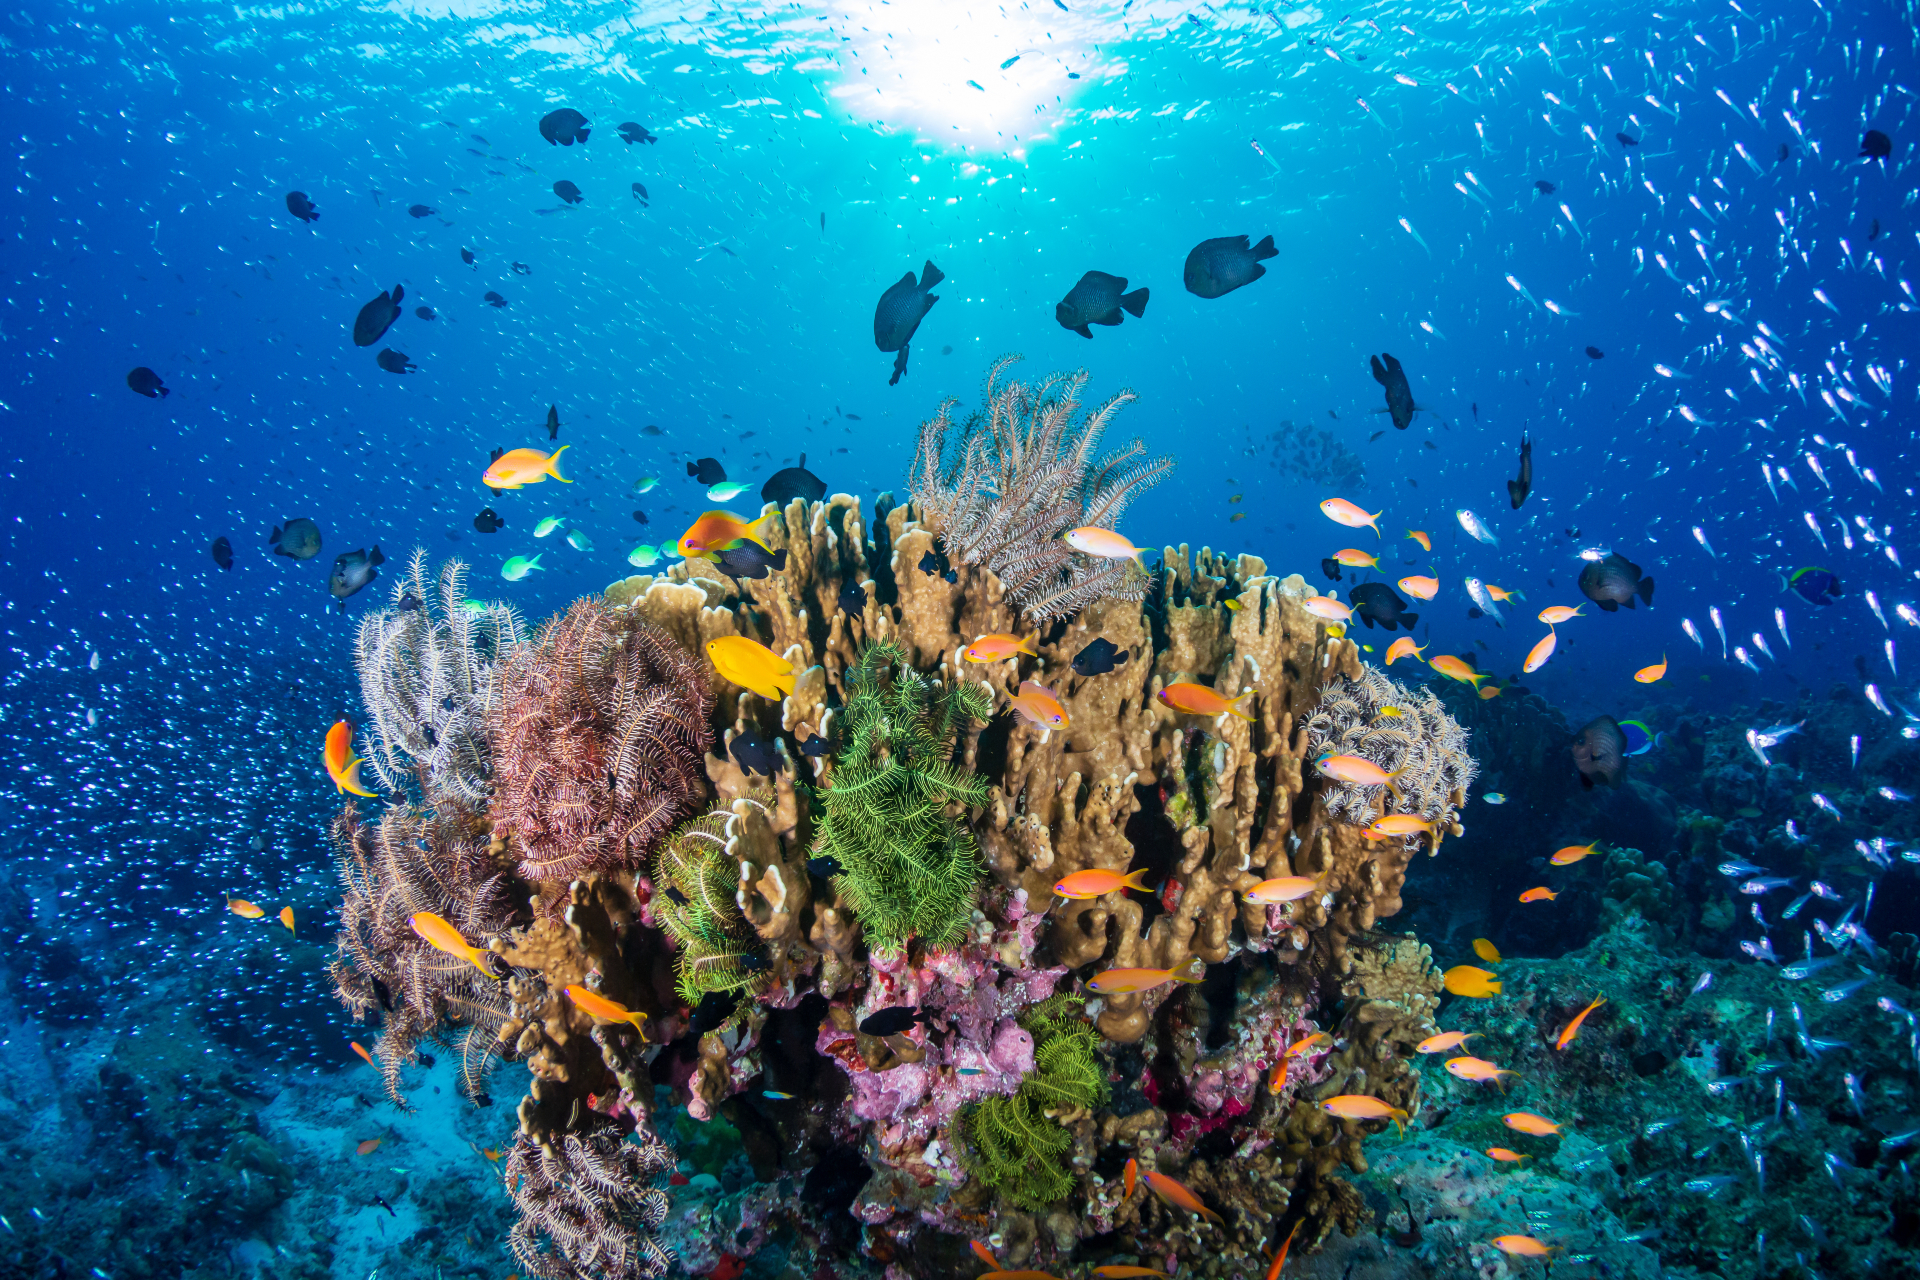 Un nouveau récif corallien a été découvert en Australie, le premier depuis 120 ans. © whitcomberd, Adobe Stock